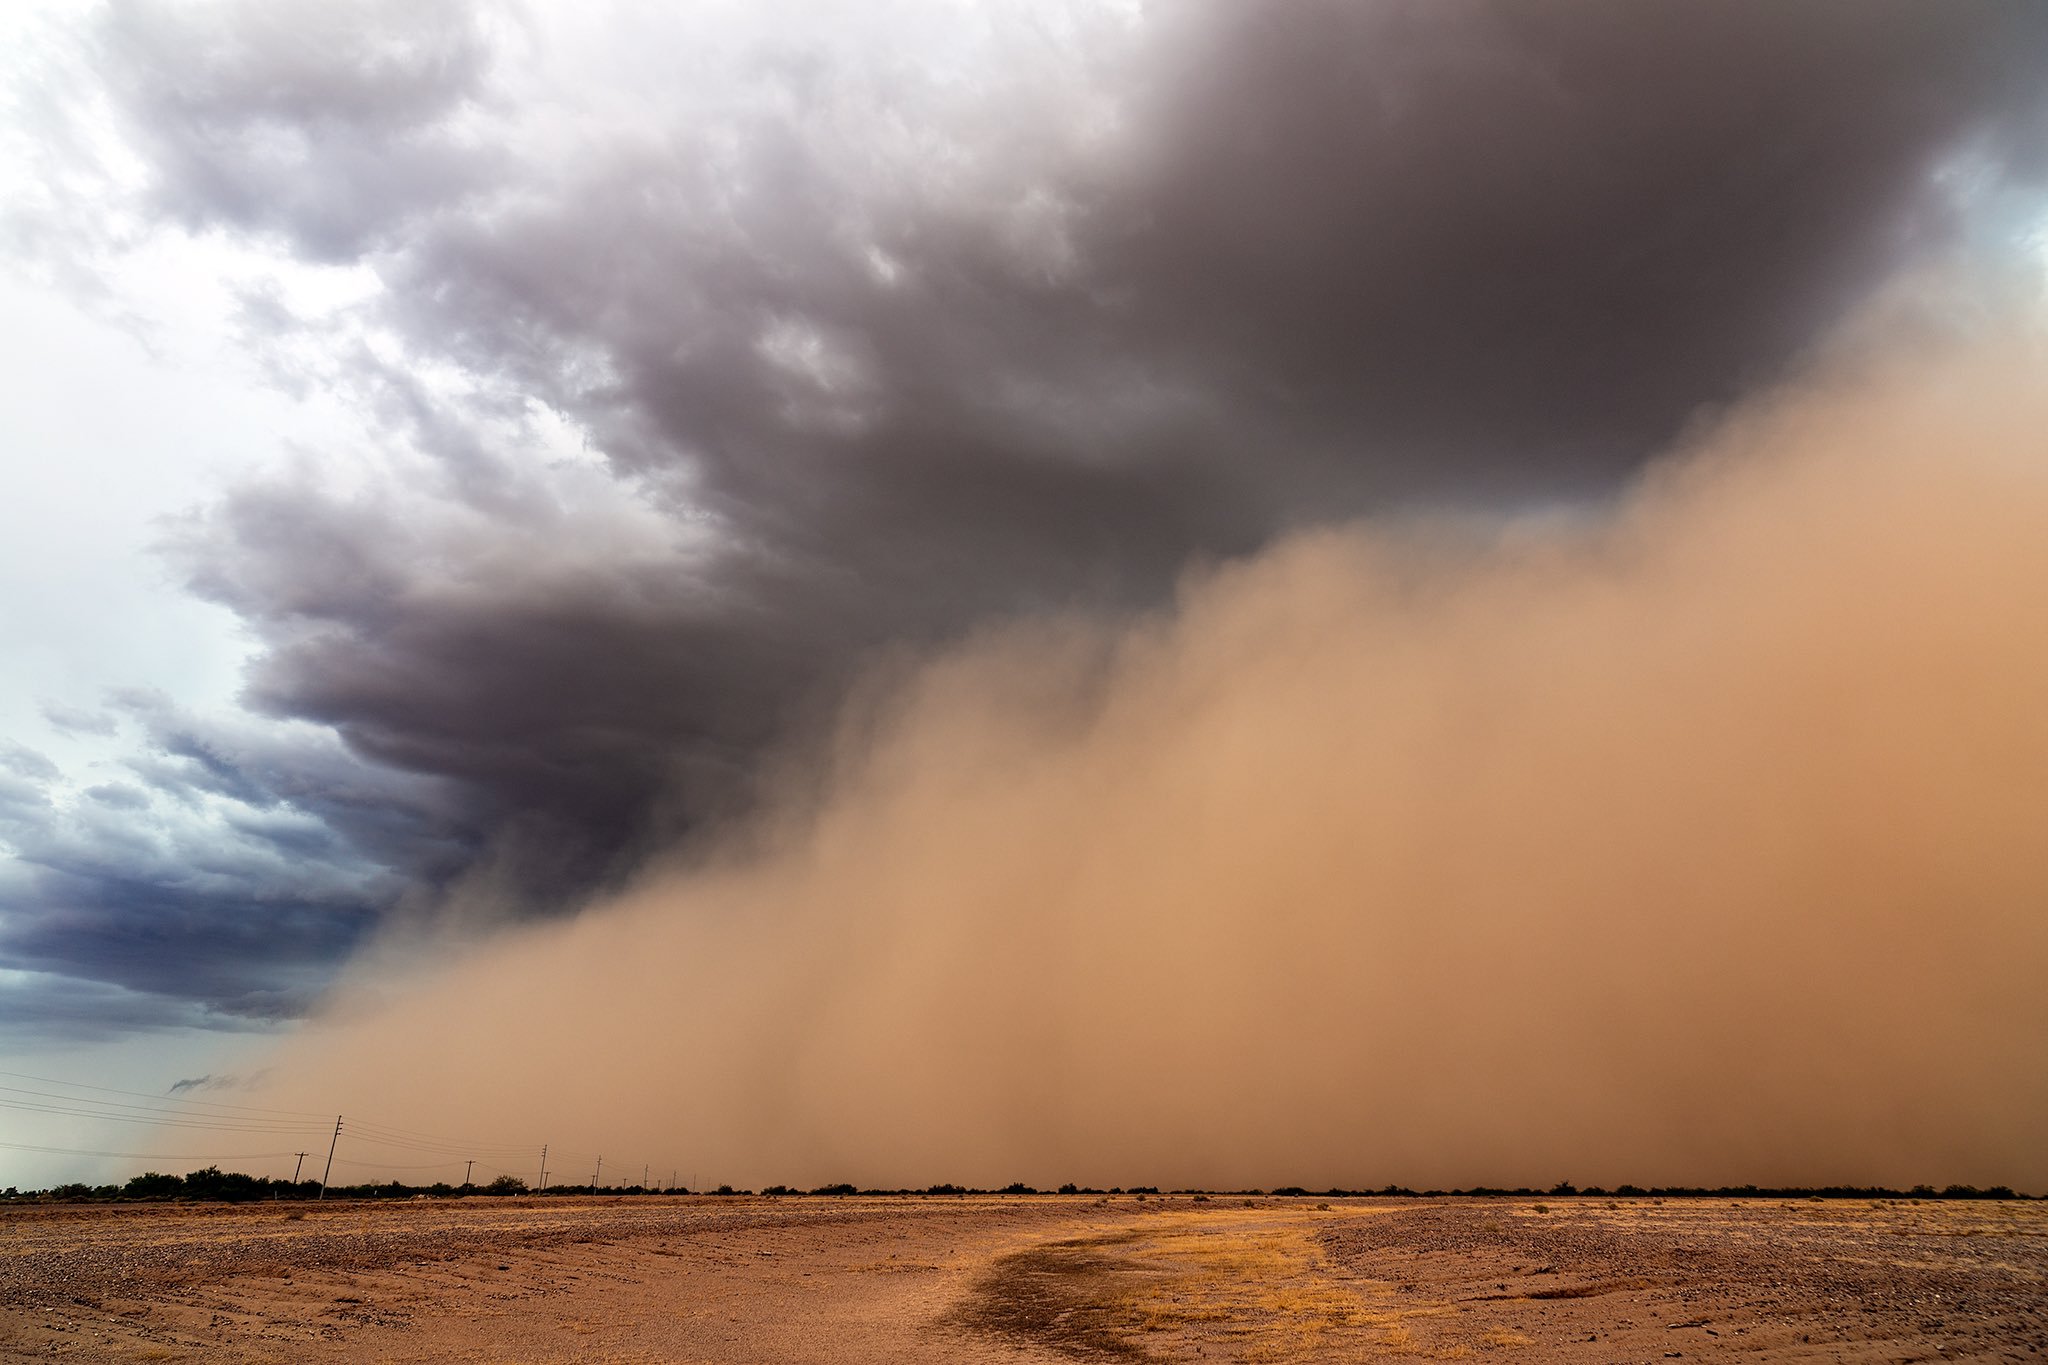 A dense haboob near Coolidge, Arizona by John Sirlin @SirlinJohn